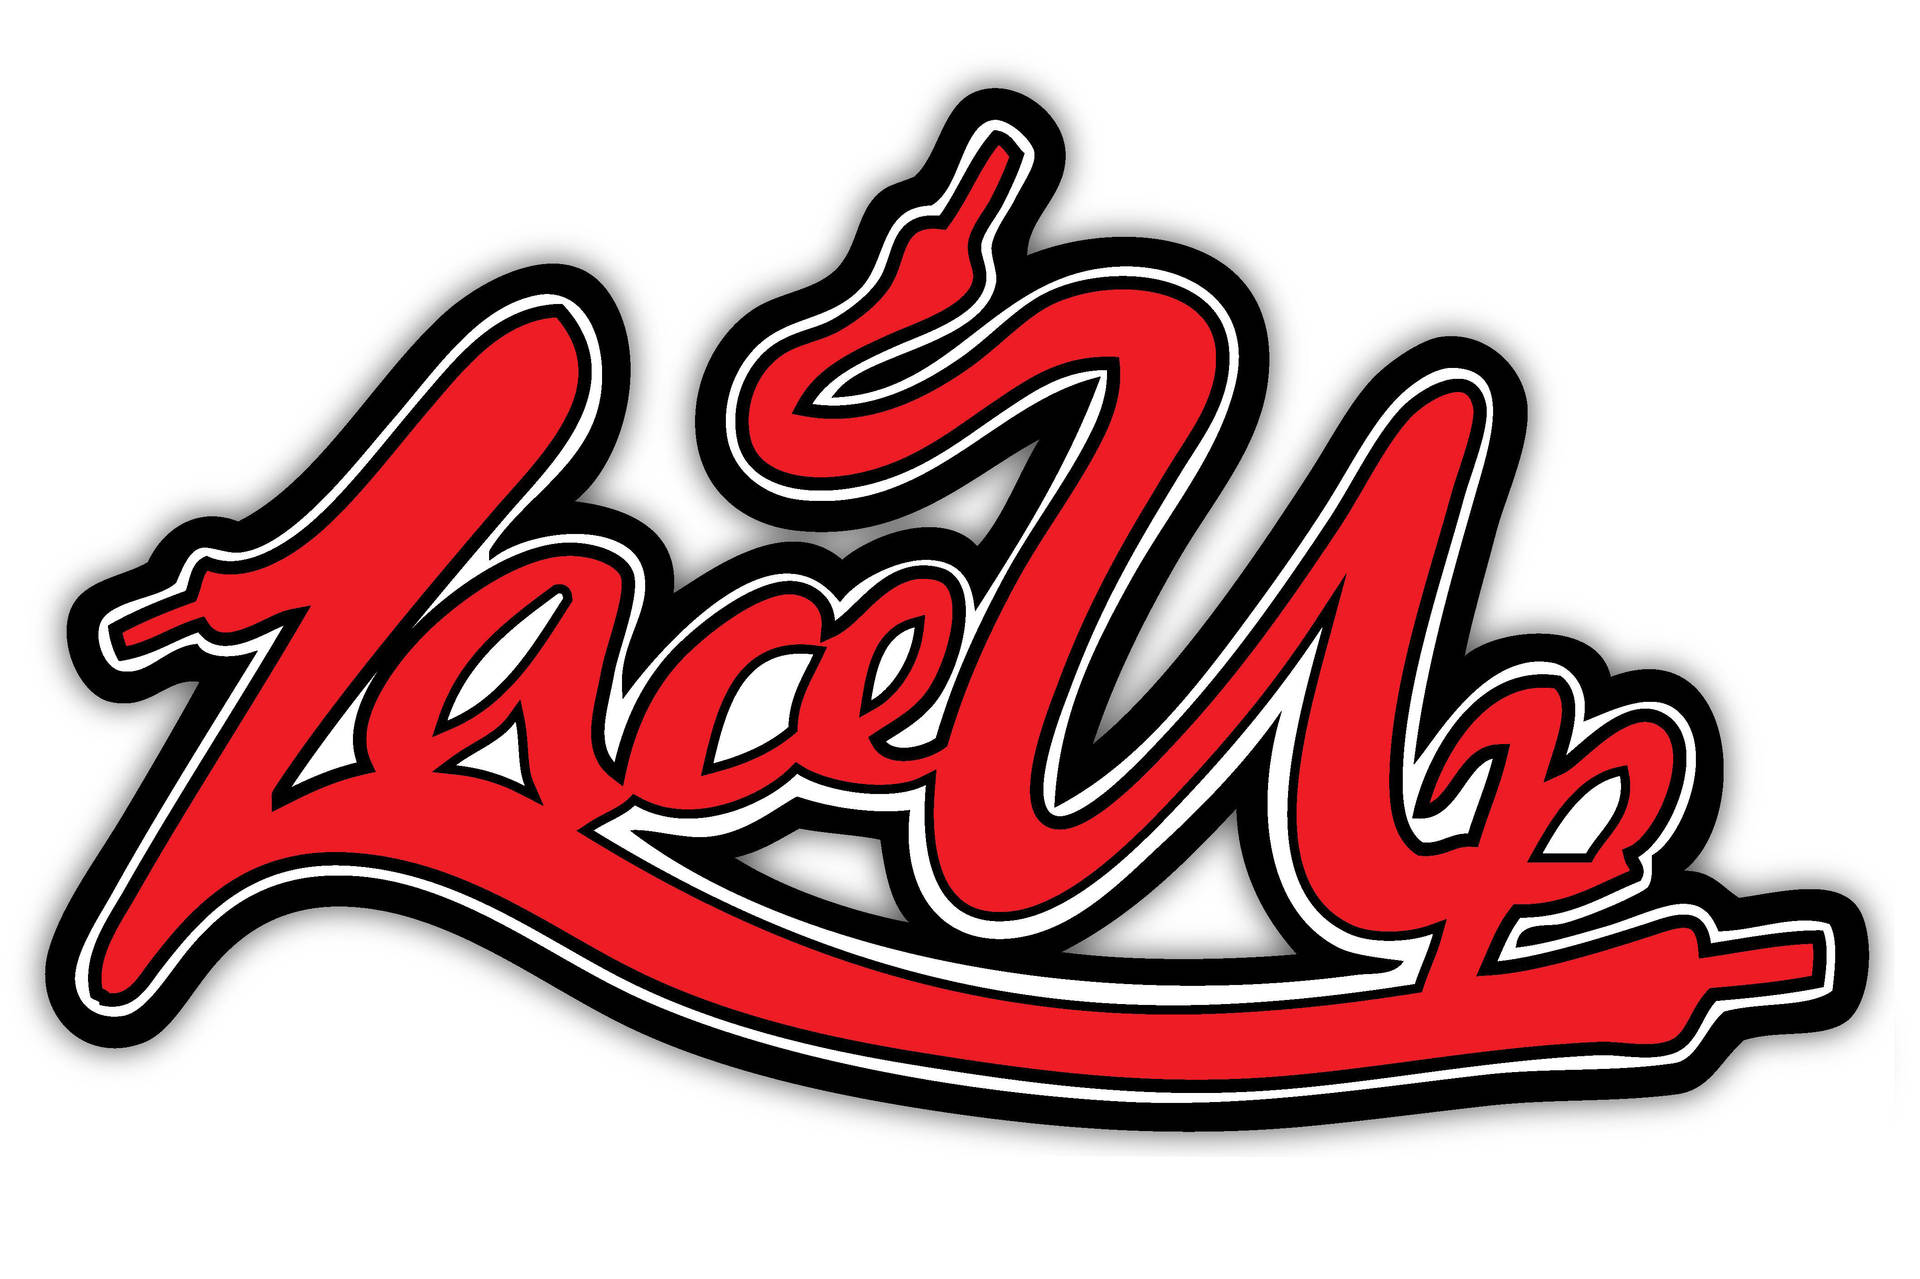 Lace Up 2010 Logo